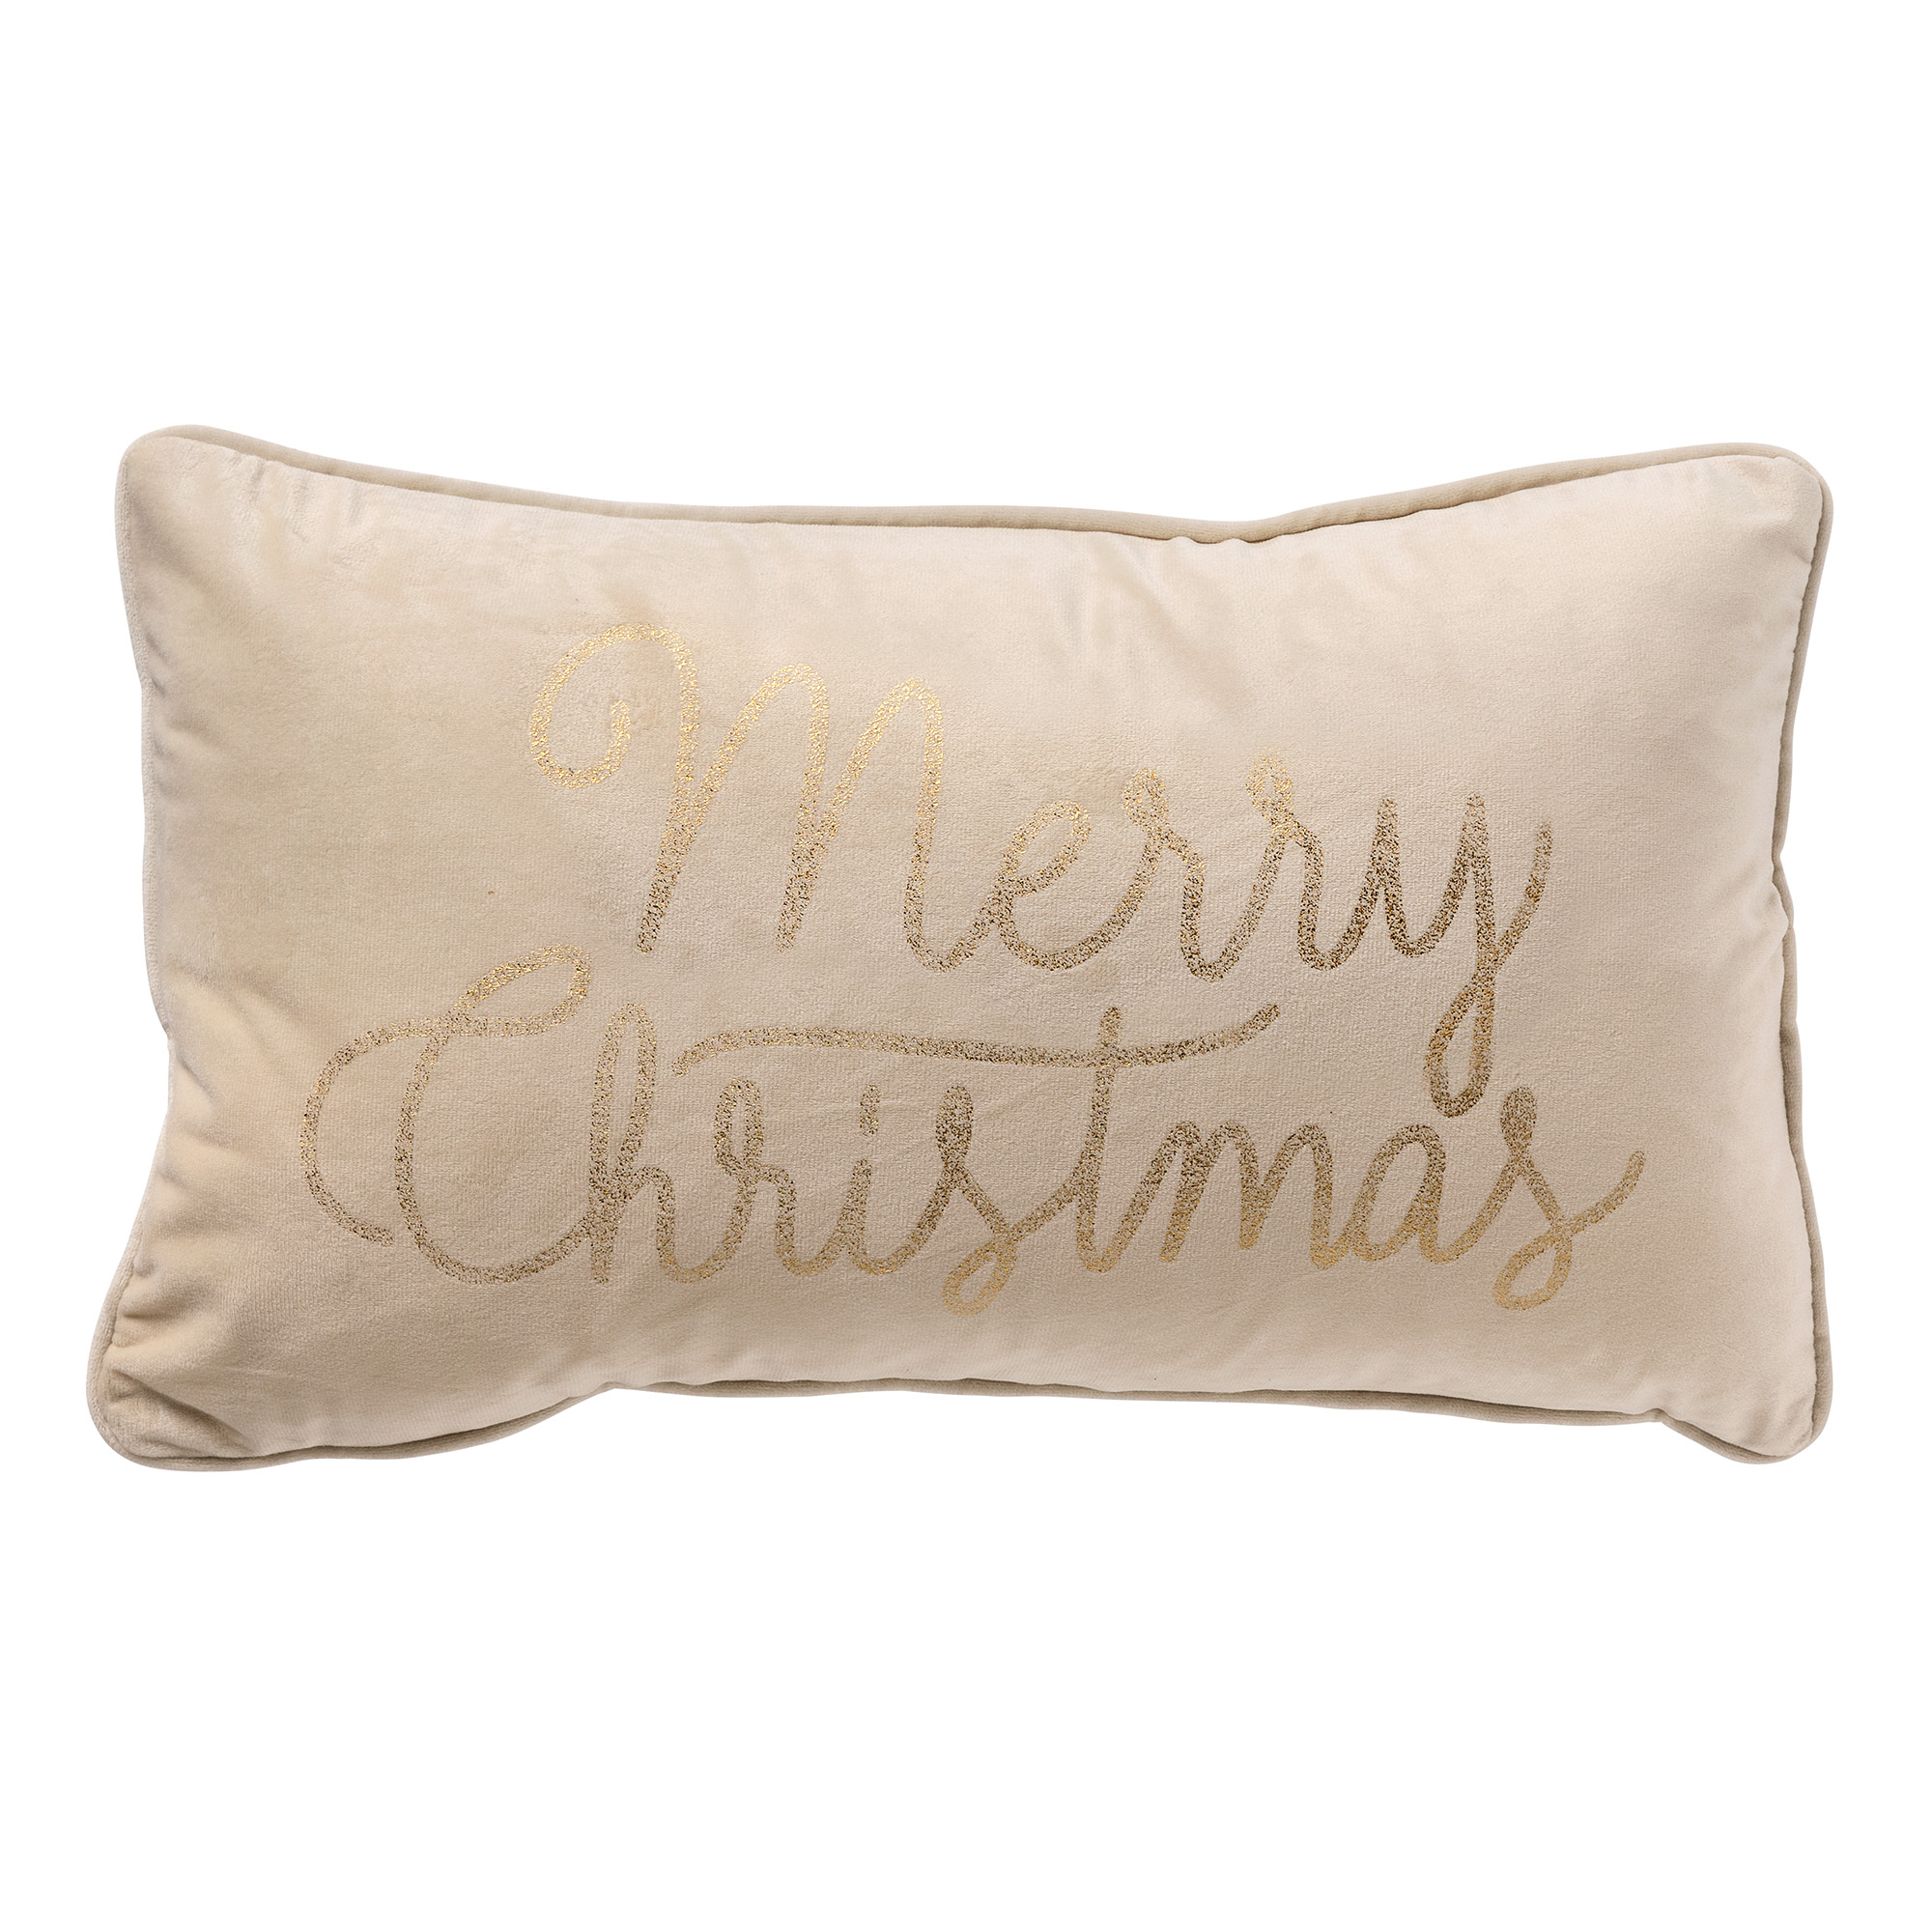 MERRY CHRISTMAS - Kussenhoes 30x50 cm - Wit - Kerst decoratie - velvet